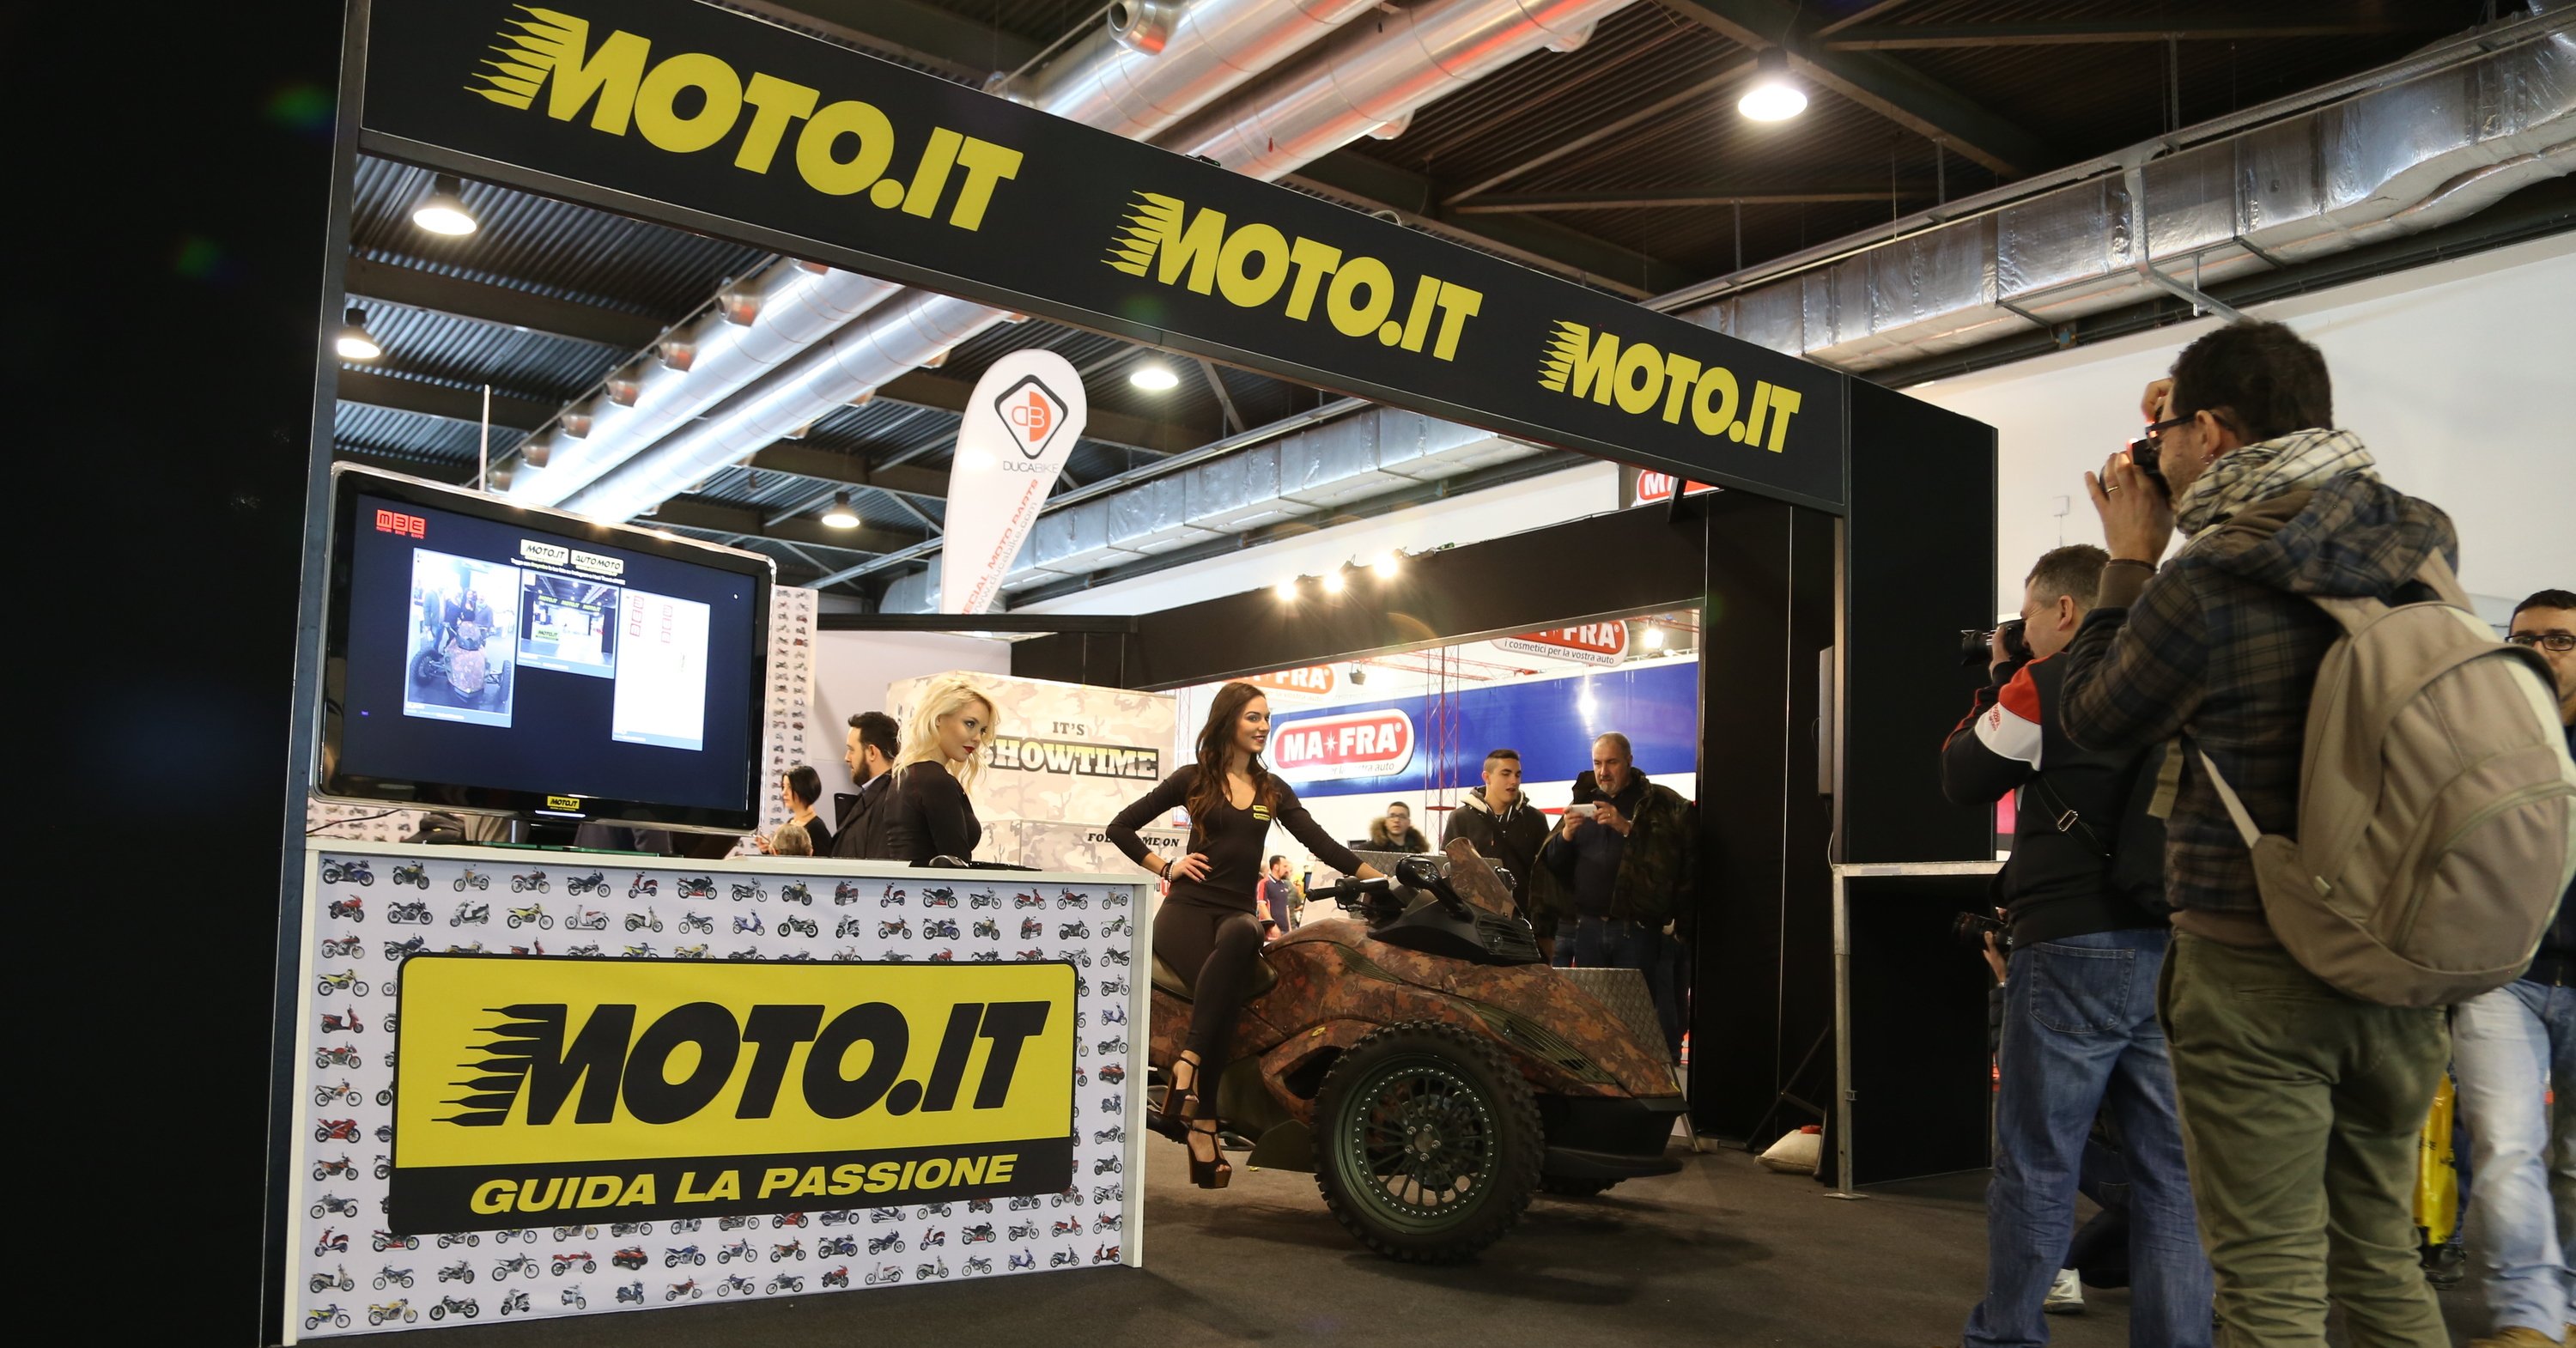 Moto.it al Motor Bike Expo 2015: vendi moto e accessori gratuitamente!